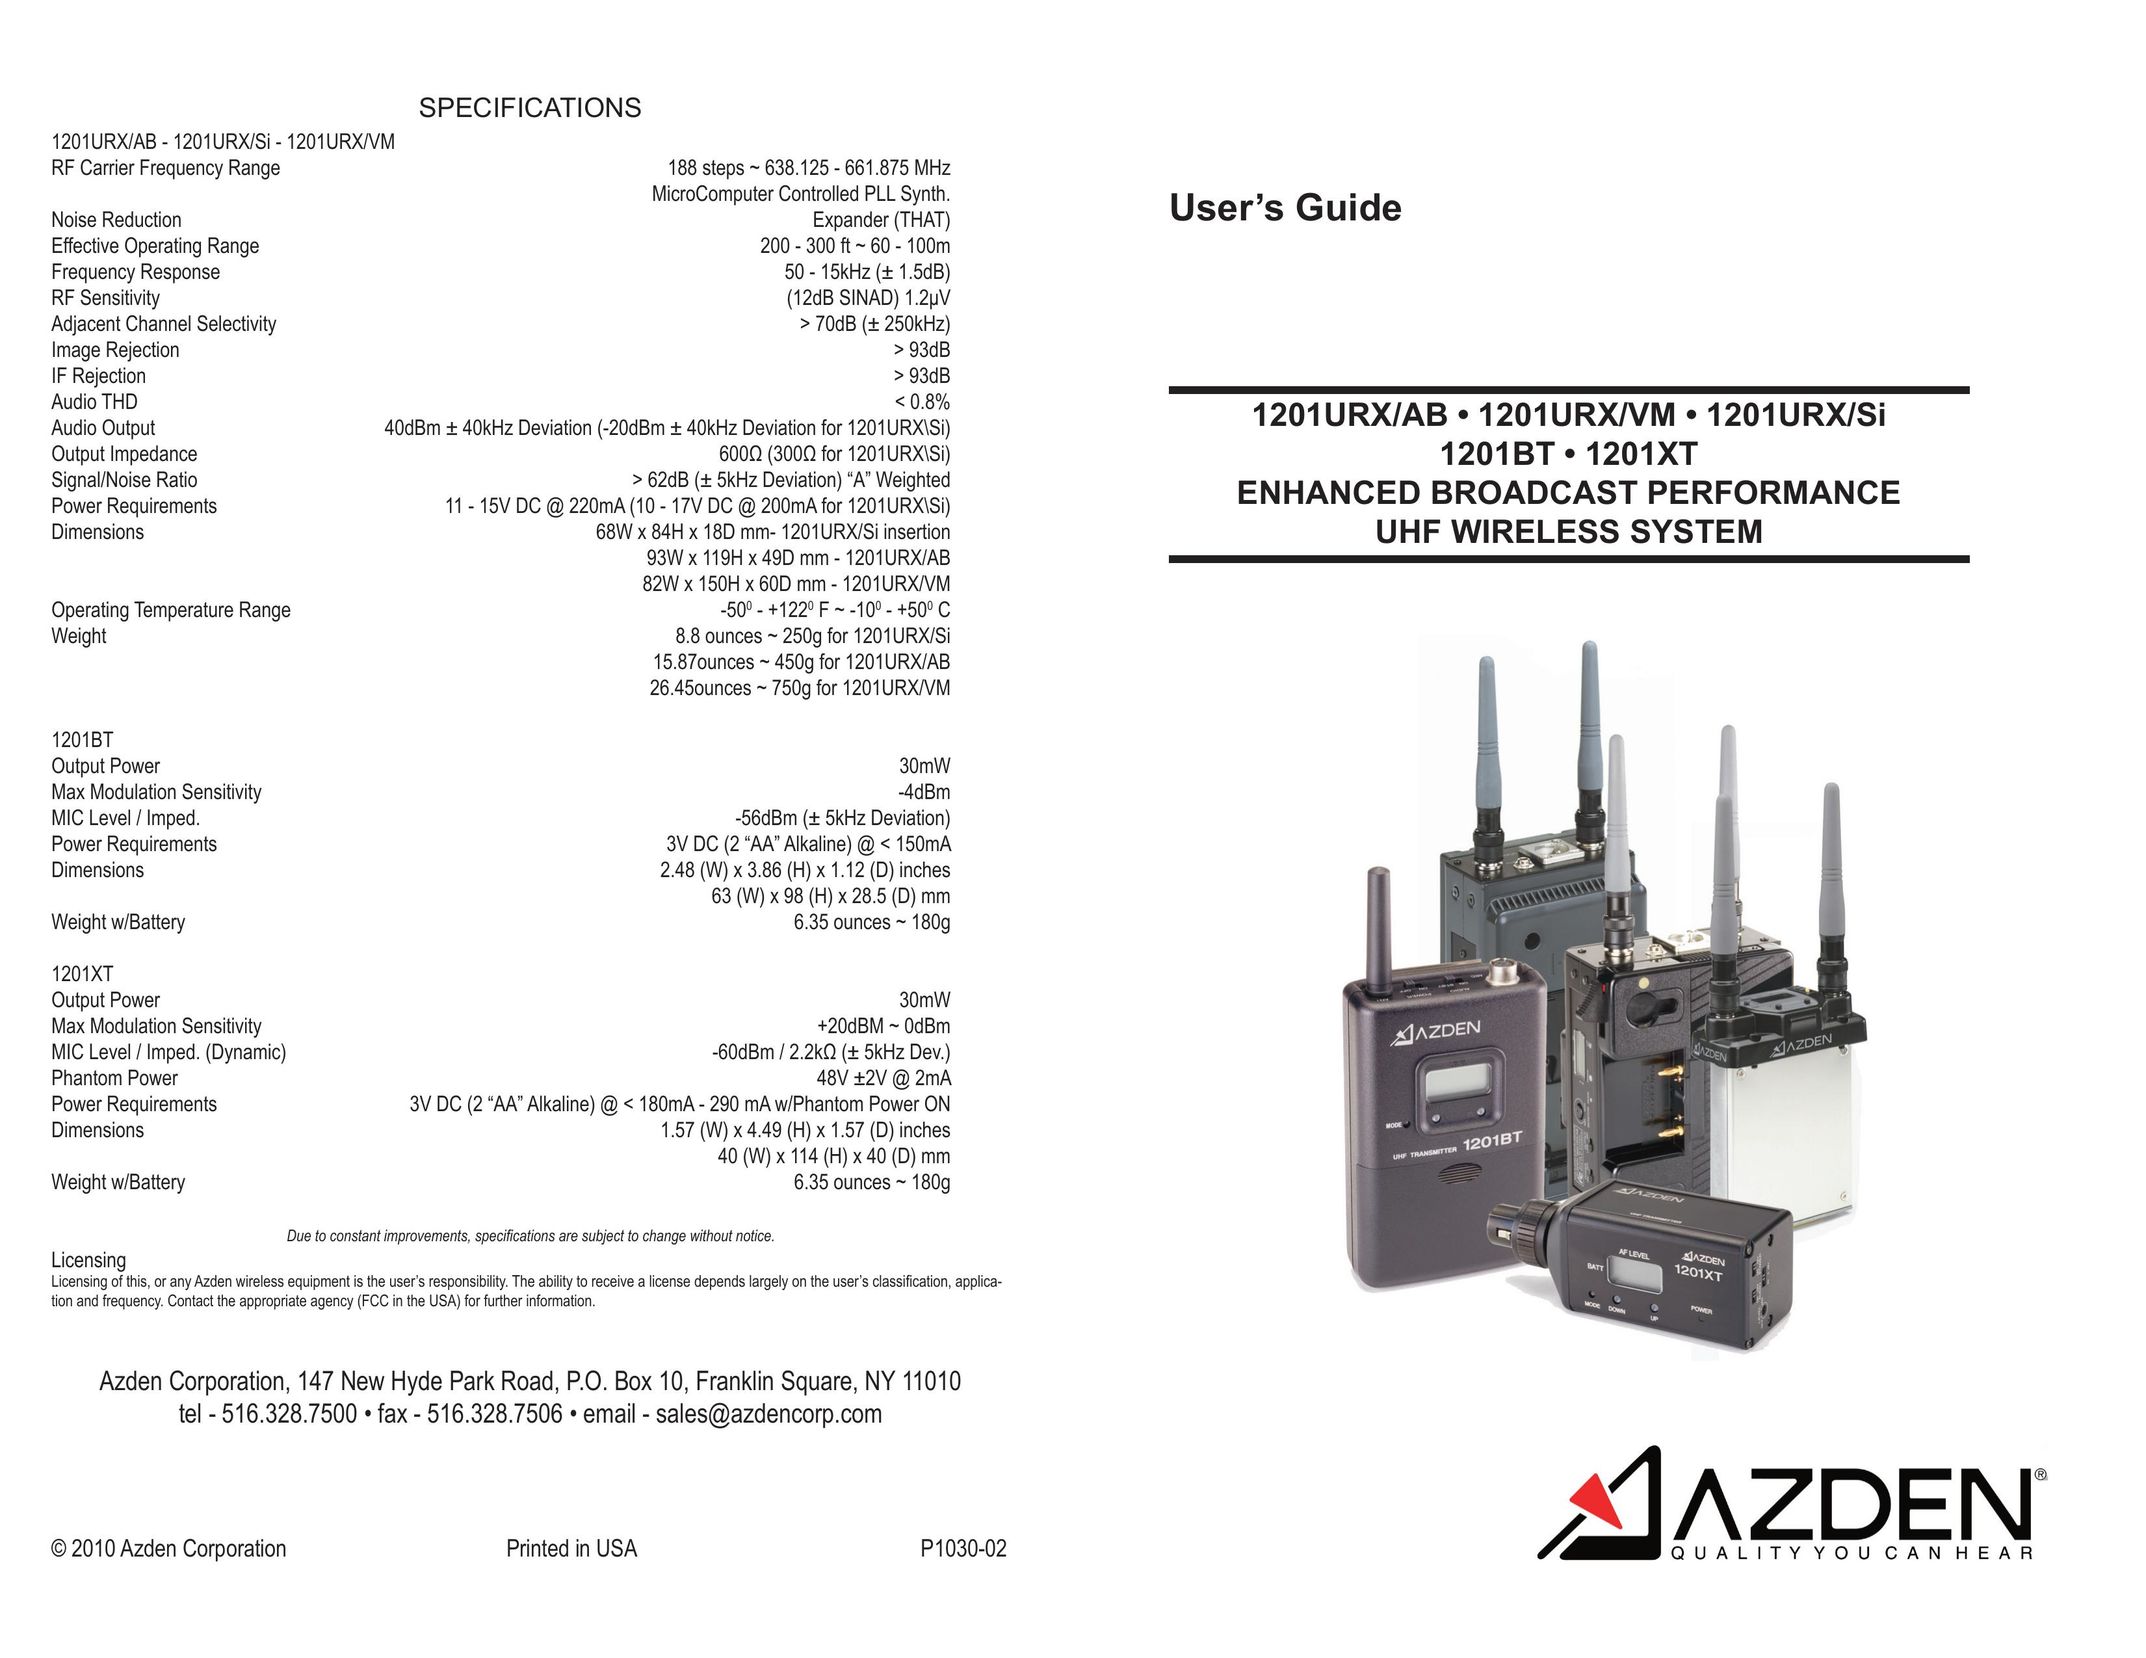 Azden 1201URX/Si Radio User Manual